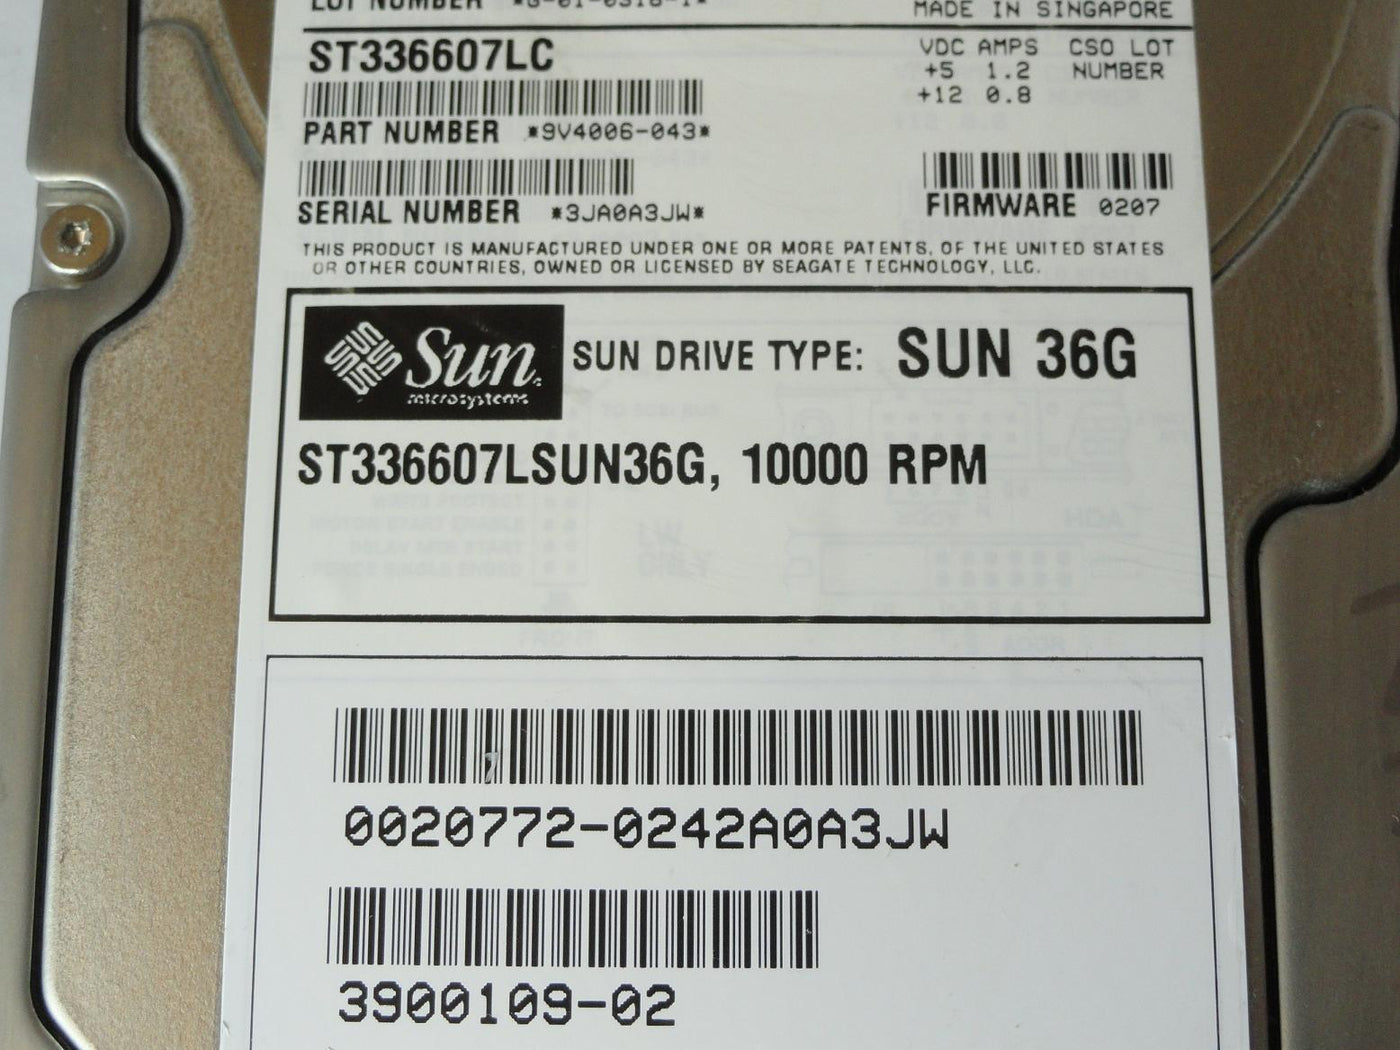 PR23069_9V4006-043_Seagate Sun 36Gb SCSI 80 Pin 10Krpm 3.5in HDD - Image3